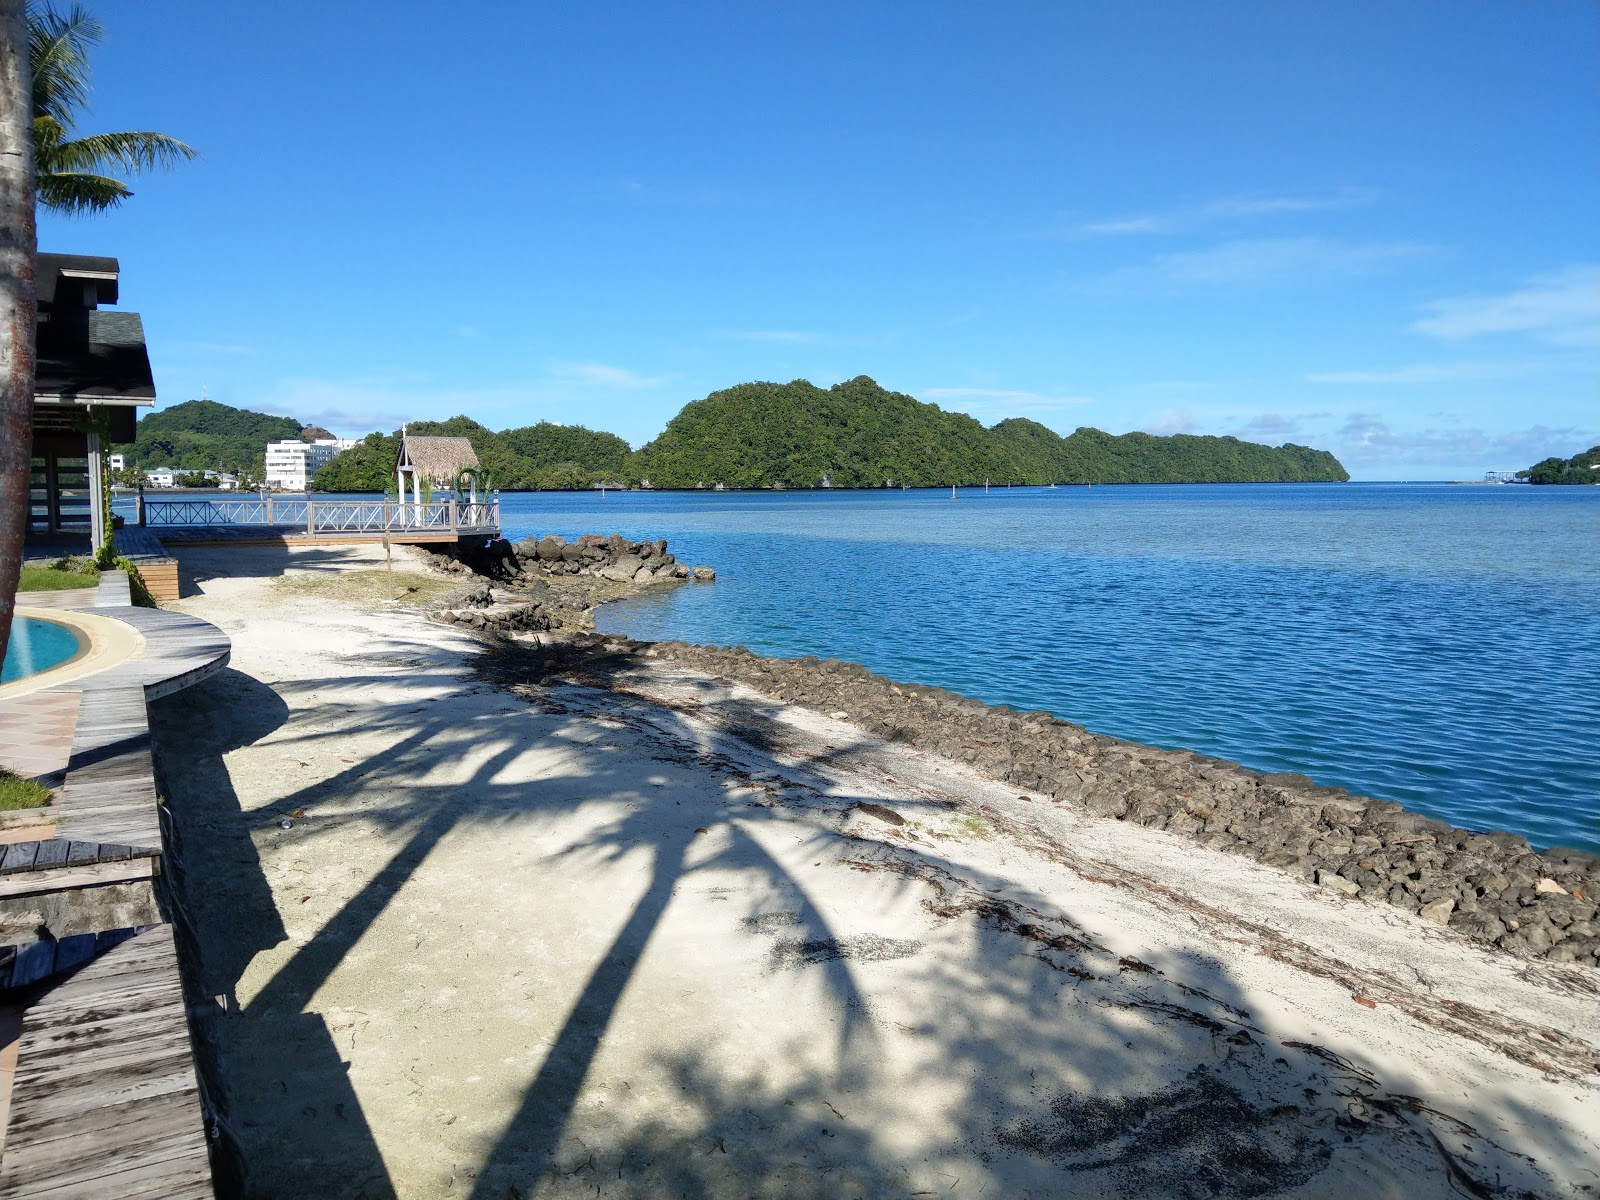 Foto af Paradise Island Resort med rummelig kyst